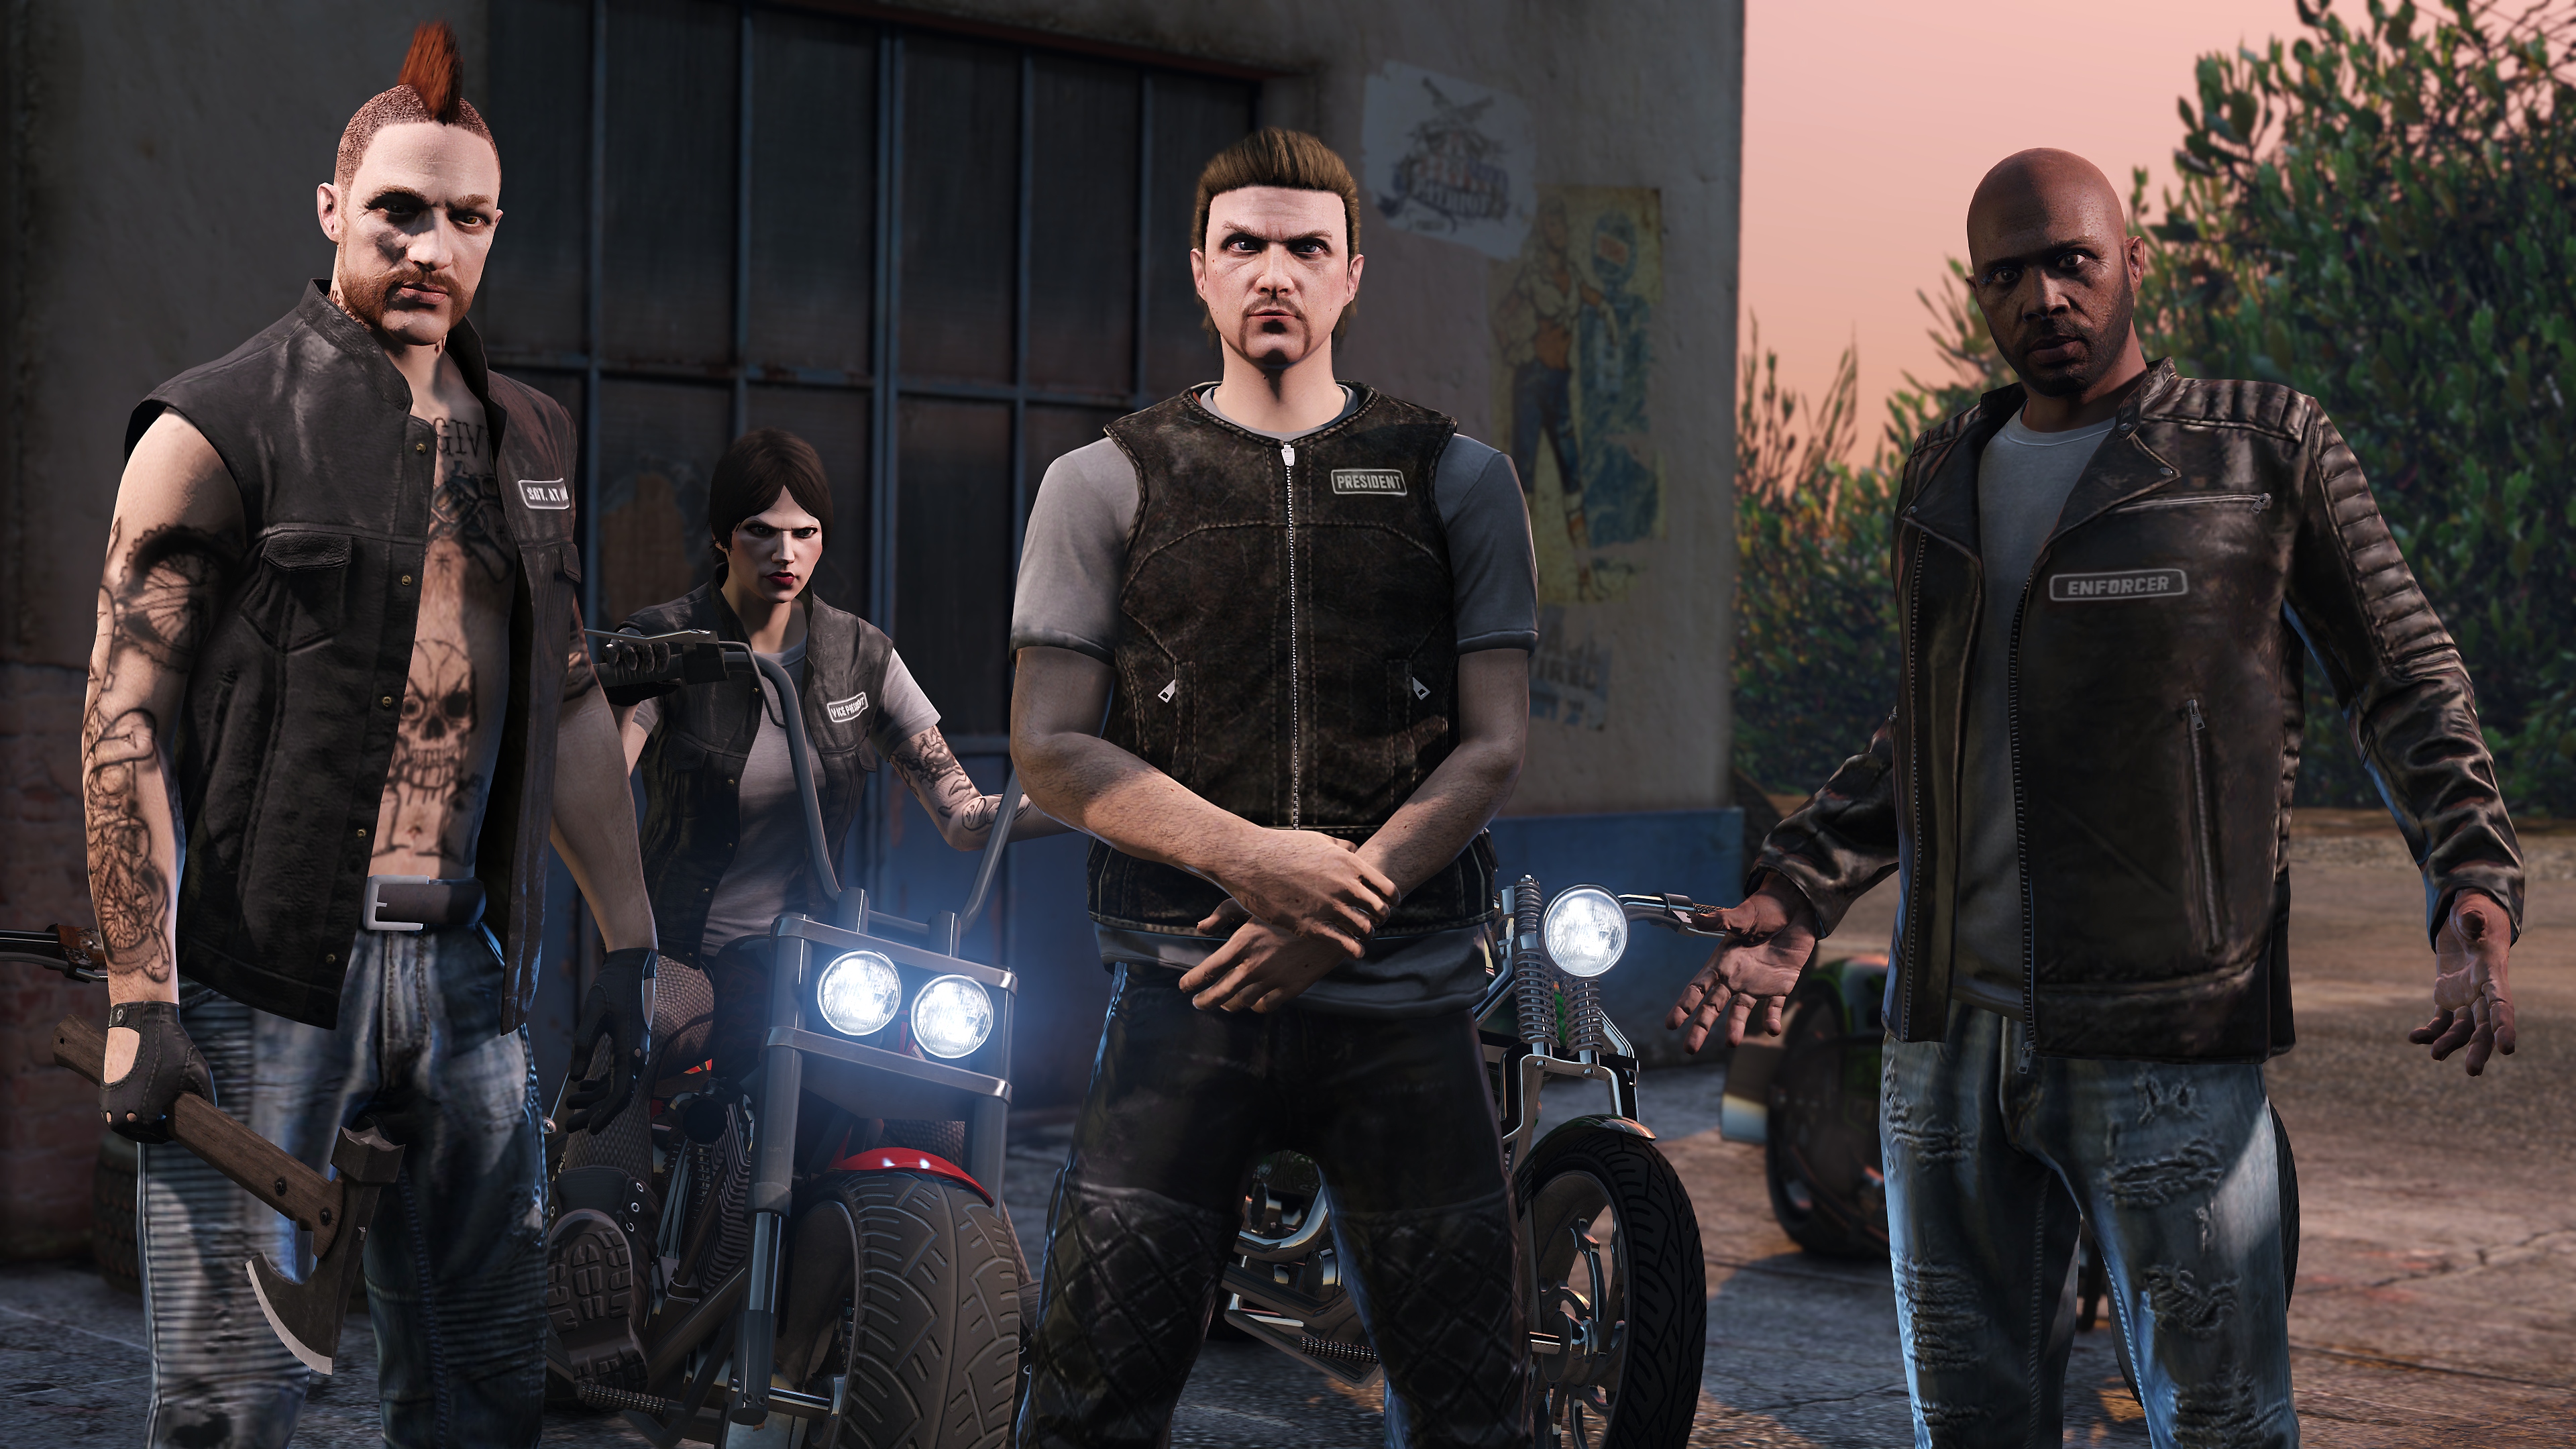 Grand Theft Auto Online – trailer som visar ett gäng motorcykelåkare